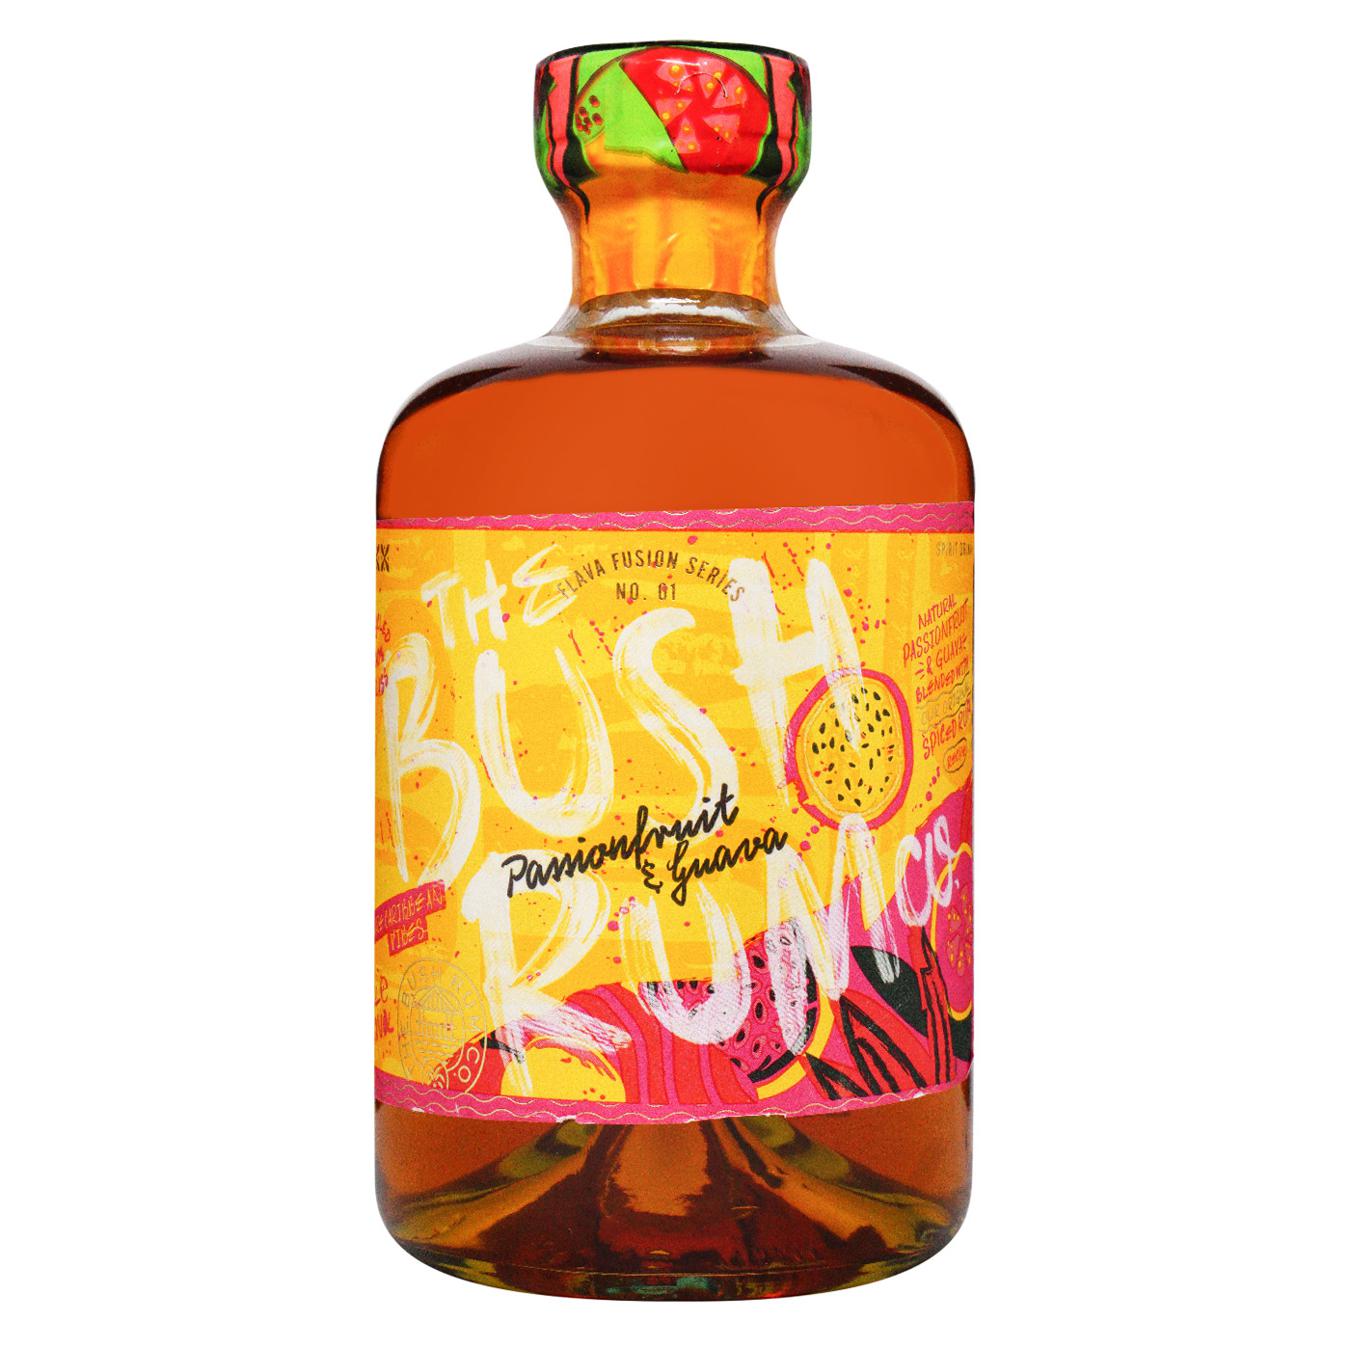 Rum Bush Spiced Passionfruit & Guava 37.5% 0.7l